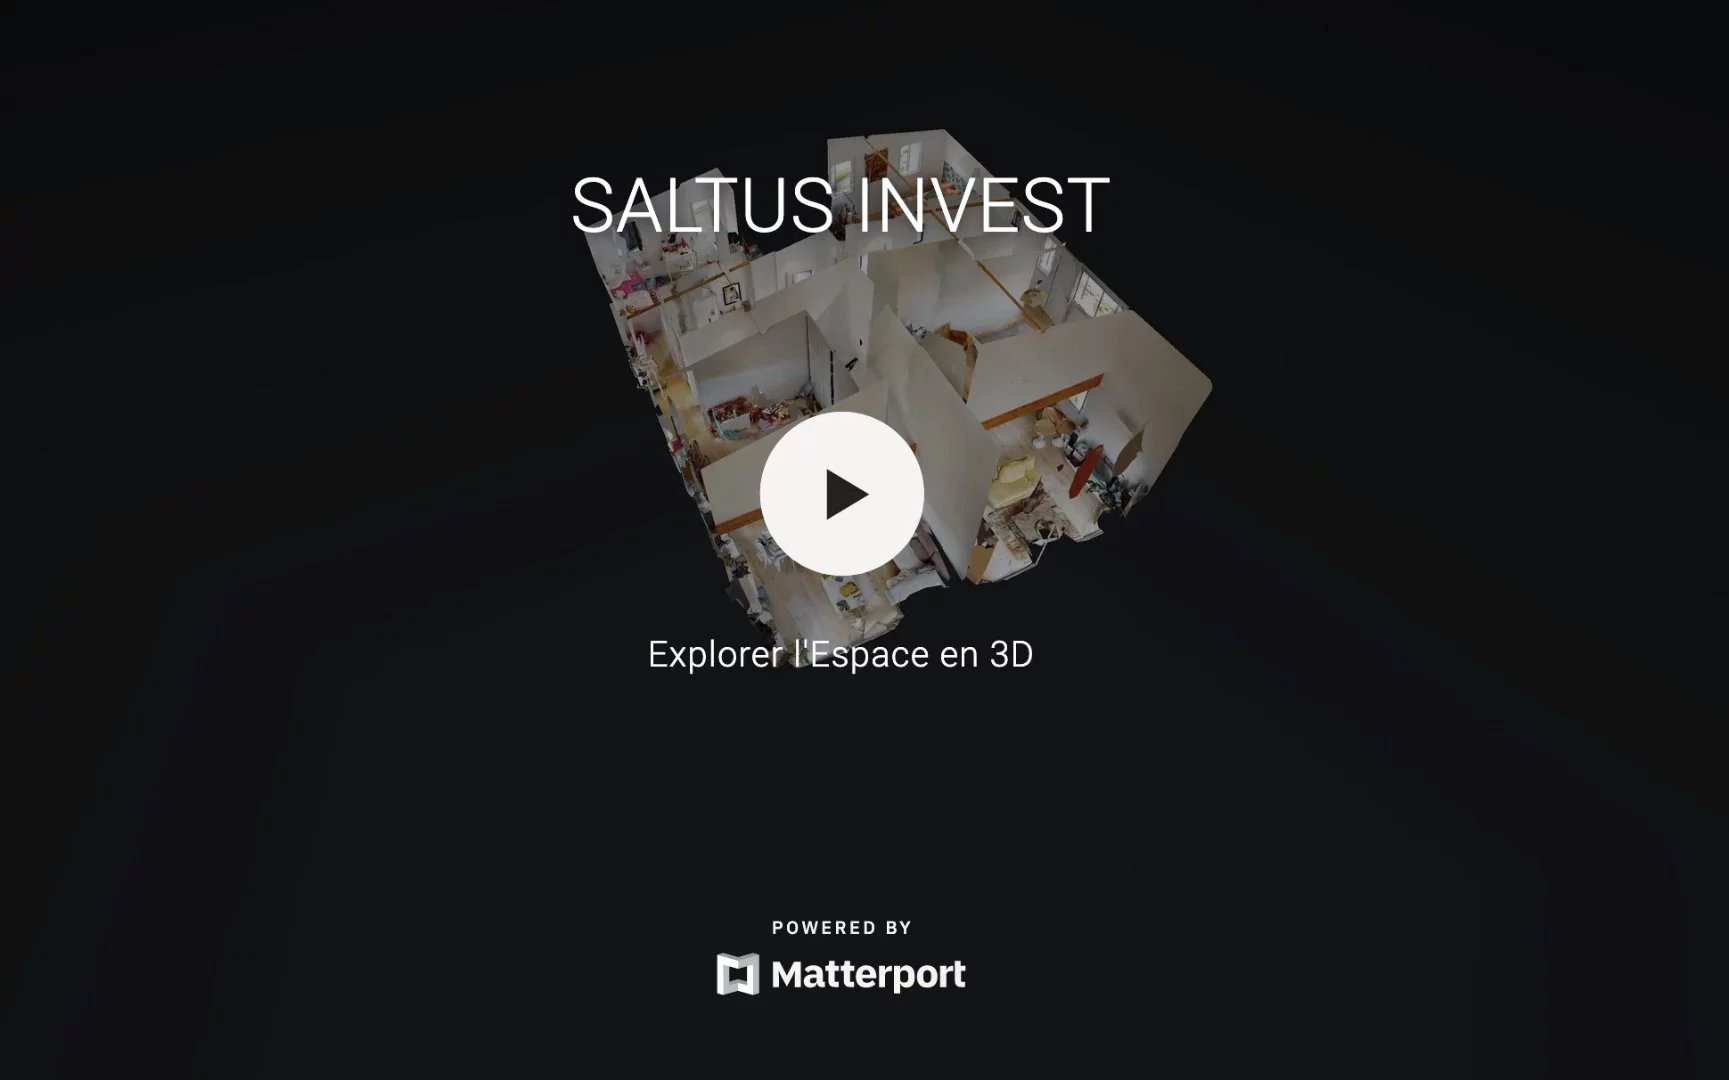 SALTUS INVEST